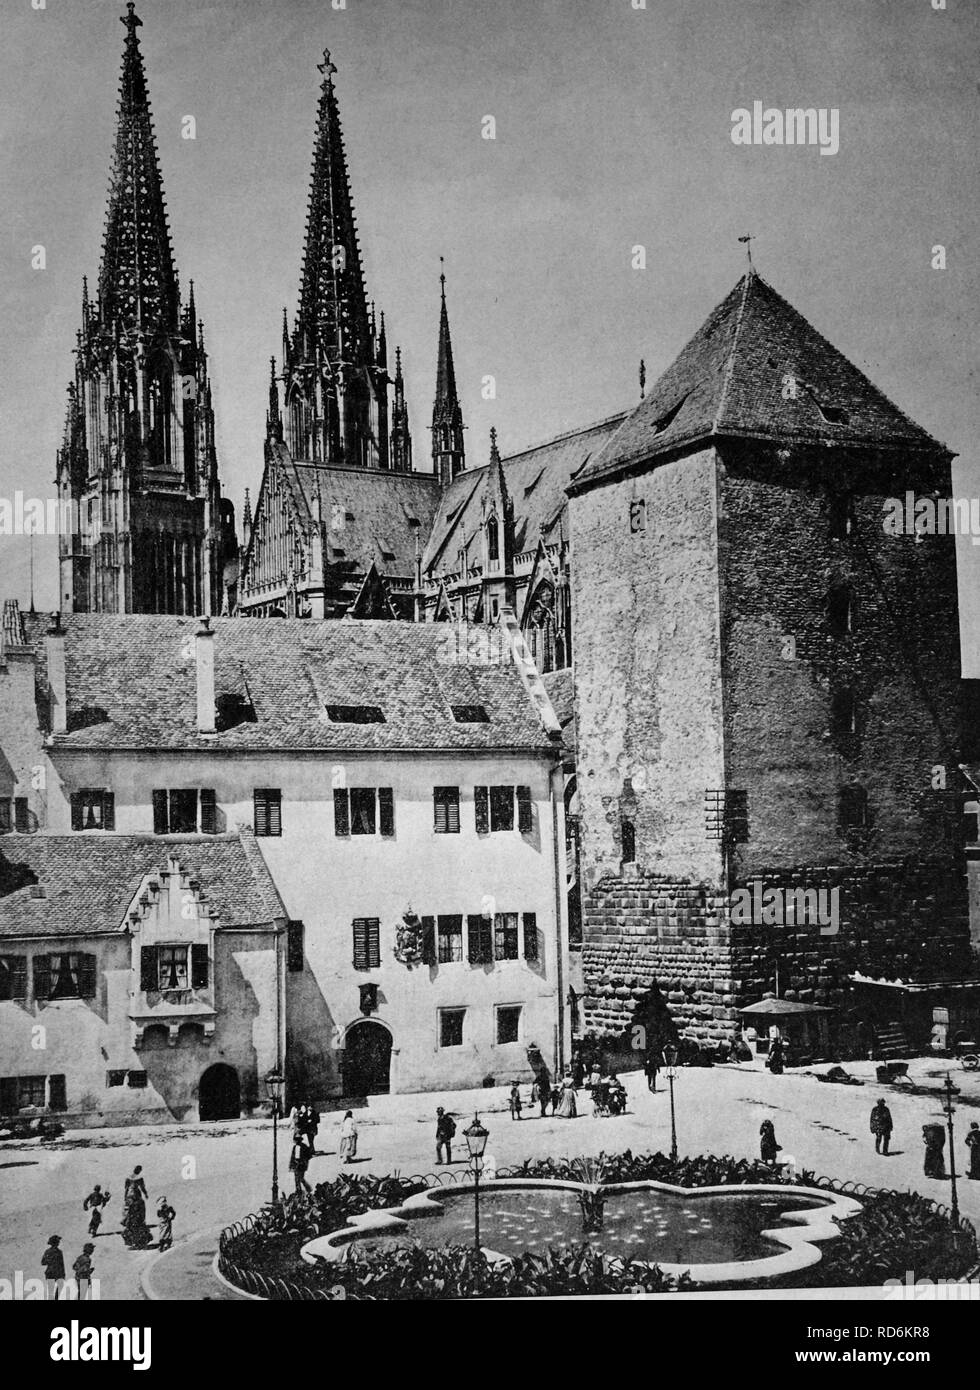 Début d'Autotype Regensburg, Bavière, UNESCO World Heritage Site, Allemagne, photo historique, 1884 Banque D'Images